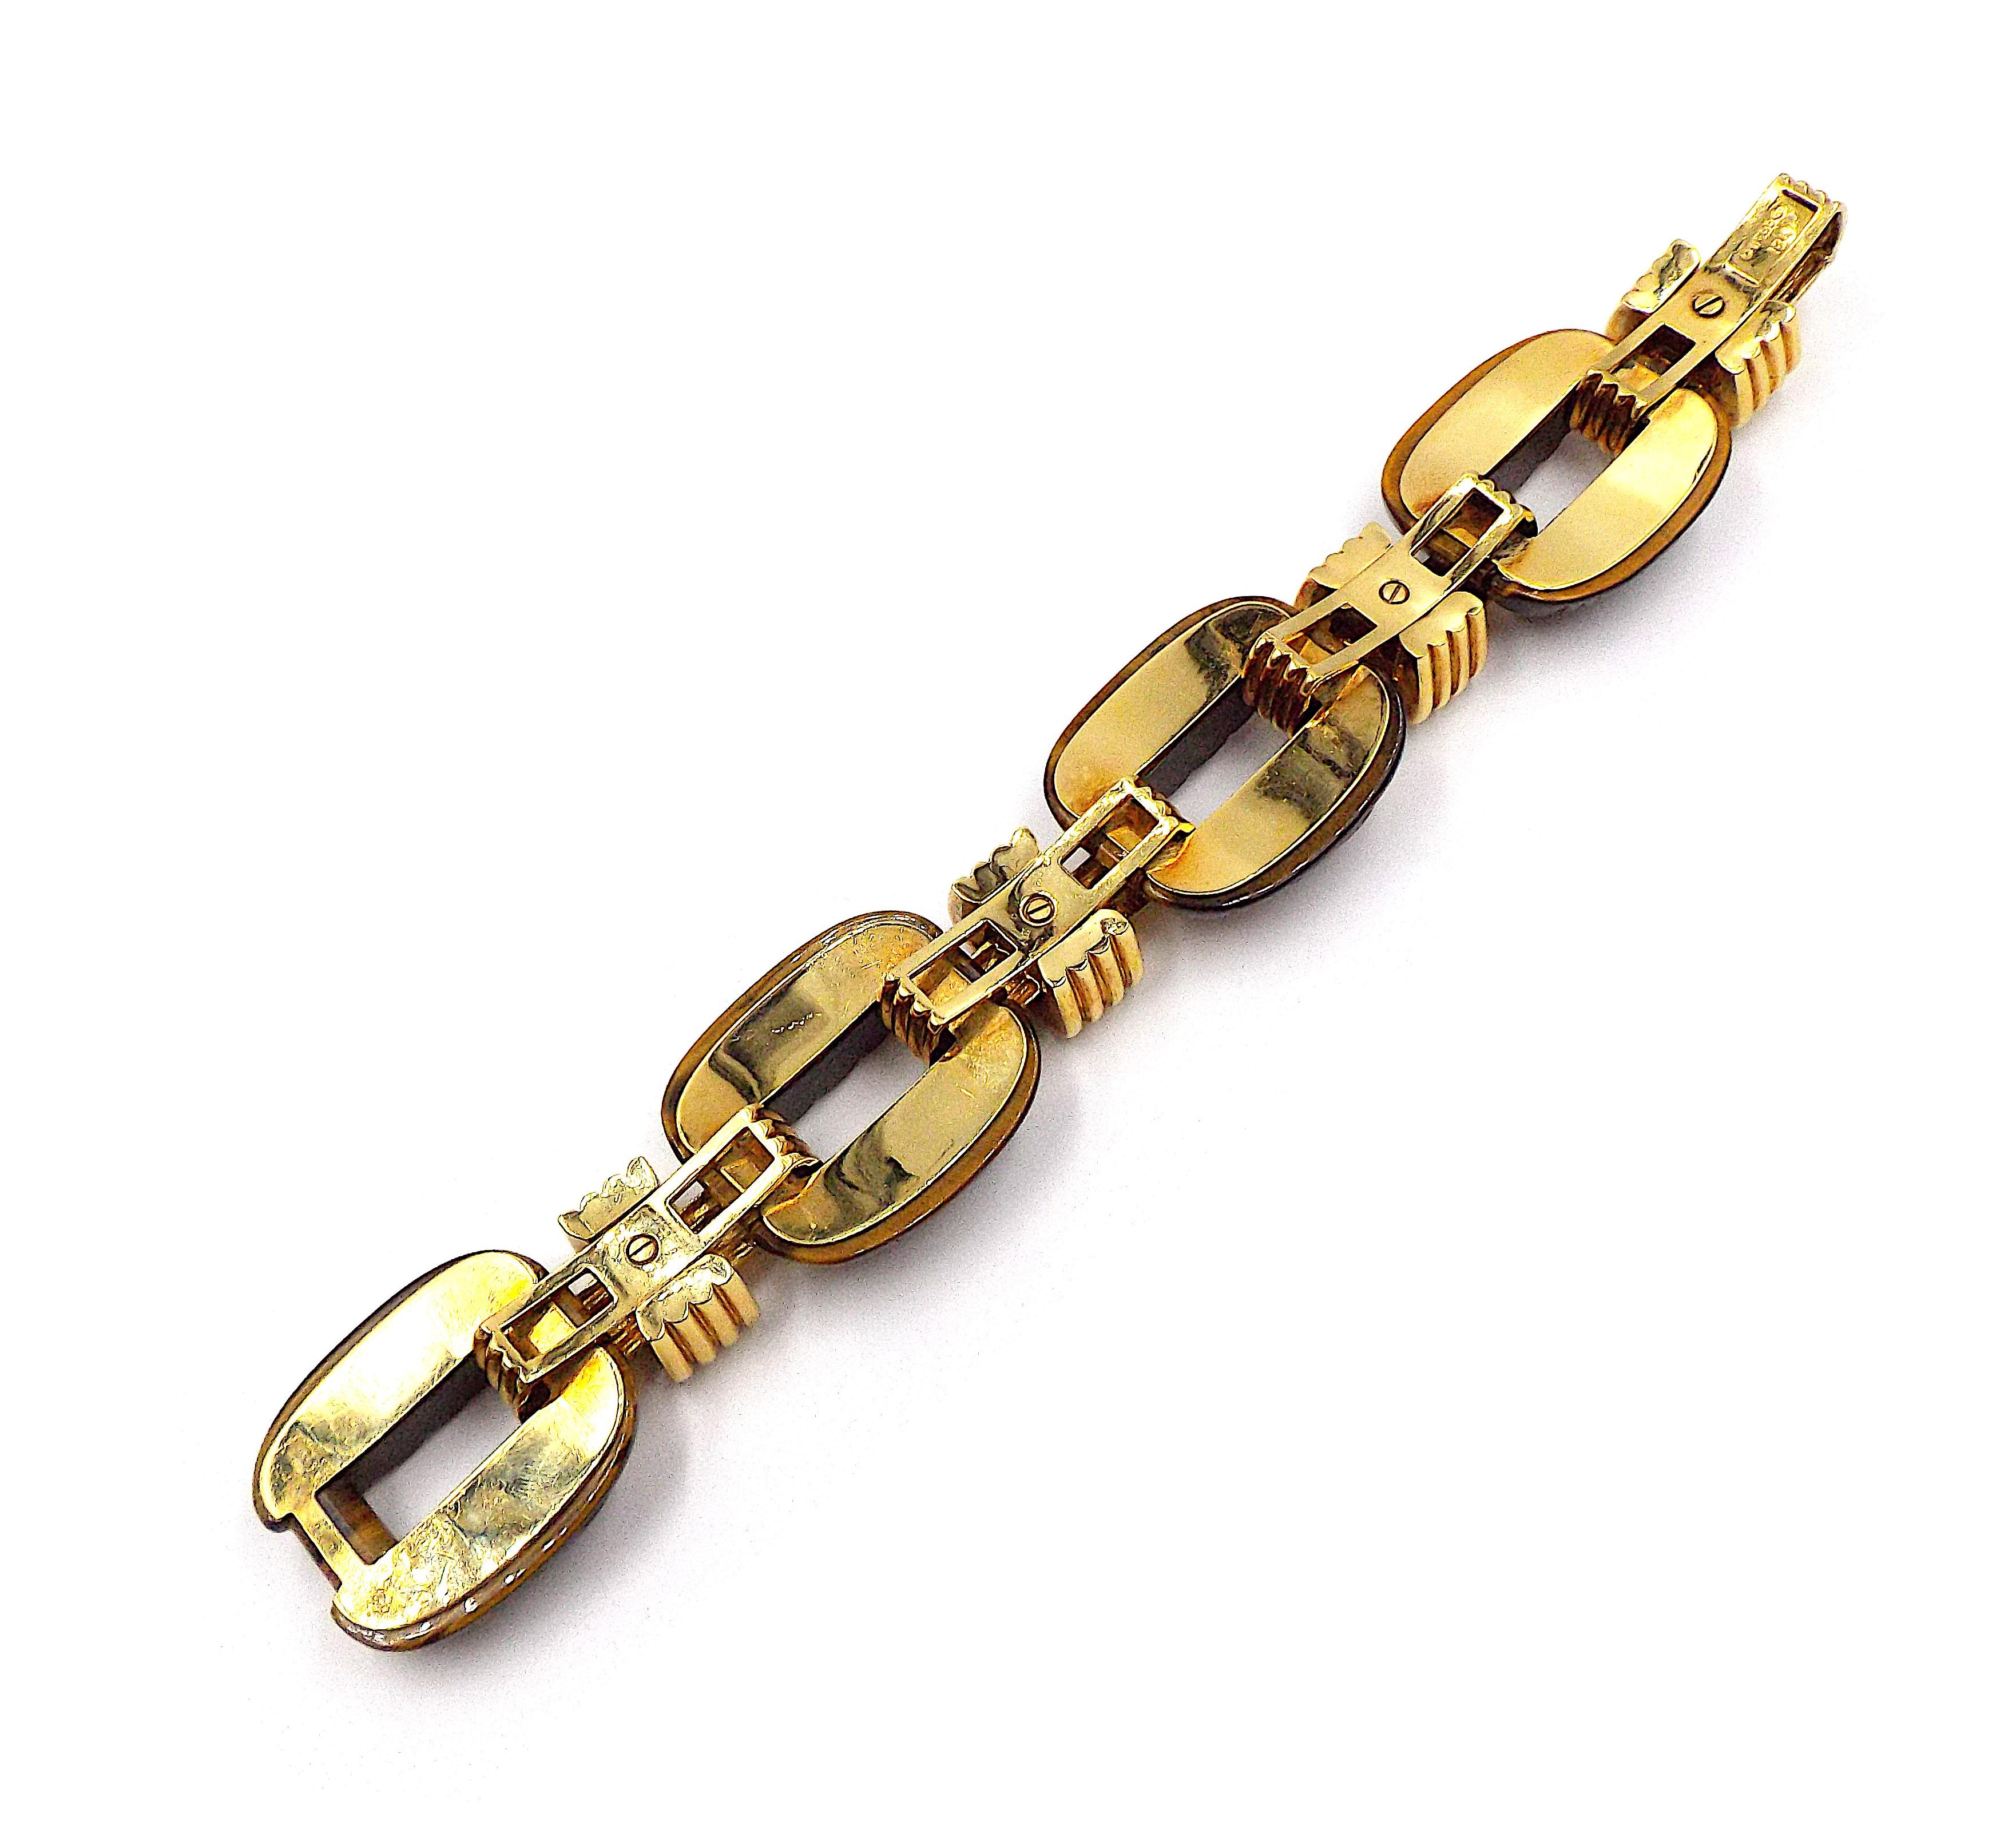 Un bracelet à maillons classique de David Webb. En or jaune 18 carats, il présente de grands maillons sculptés en forme d'œil de tigre. Signé Webb, marqué 18K. La longueur est d'environ 6,75 pouces.